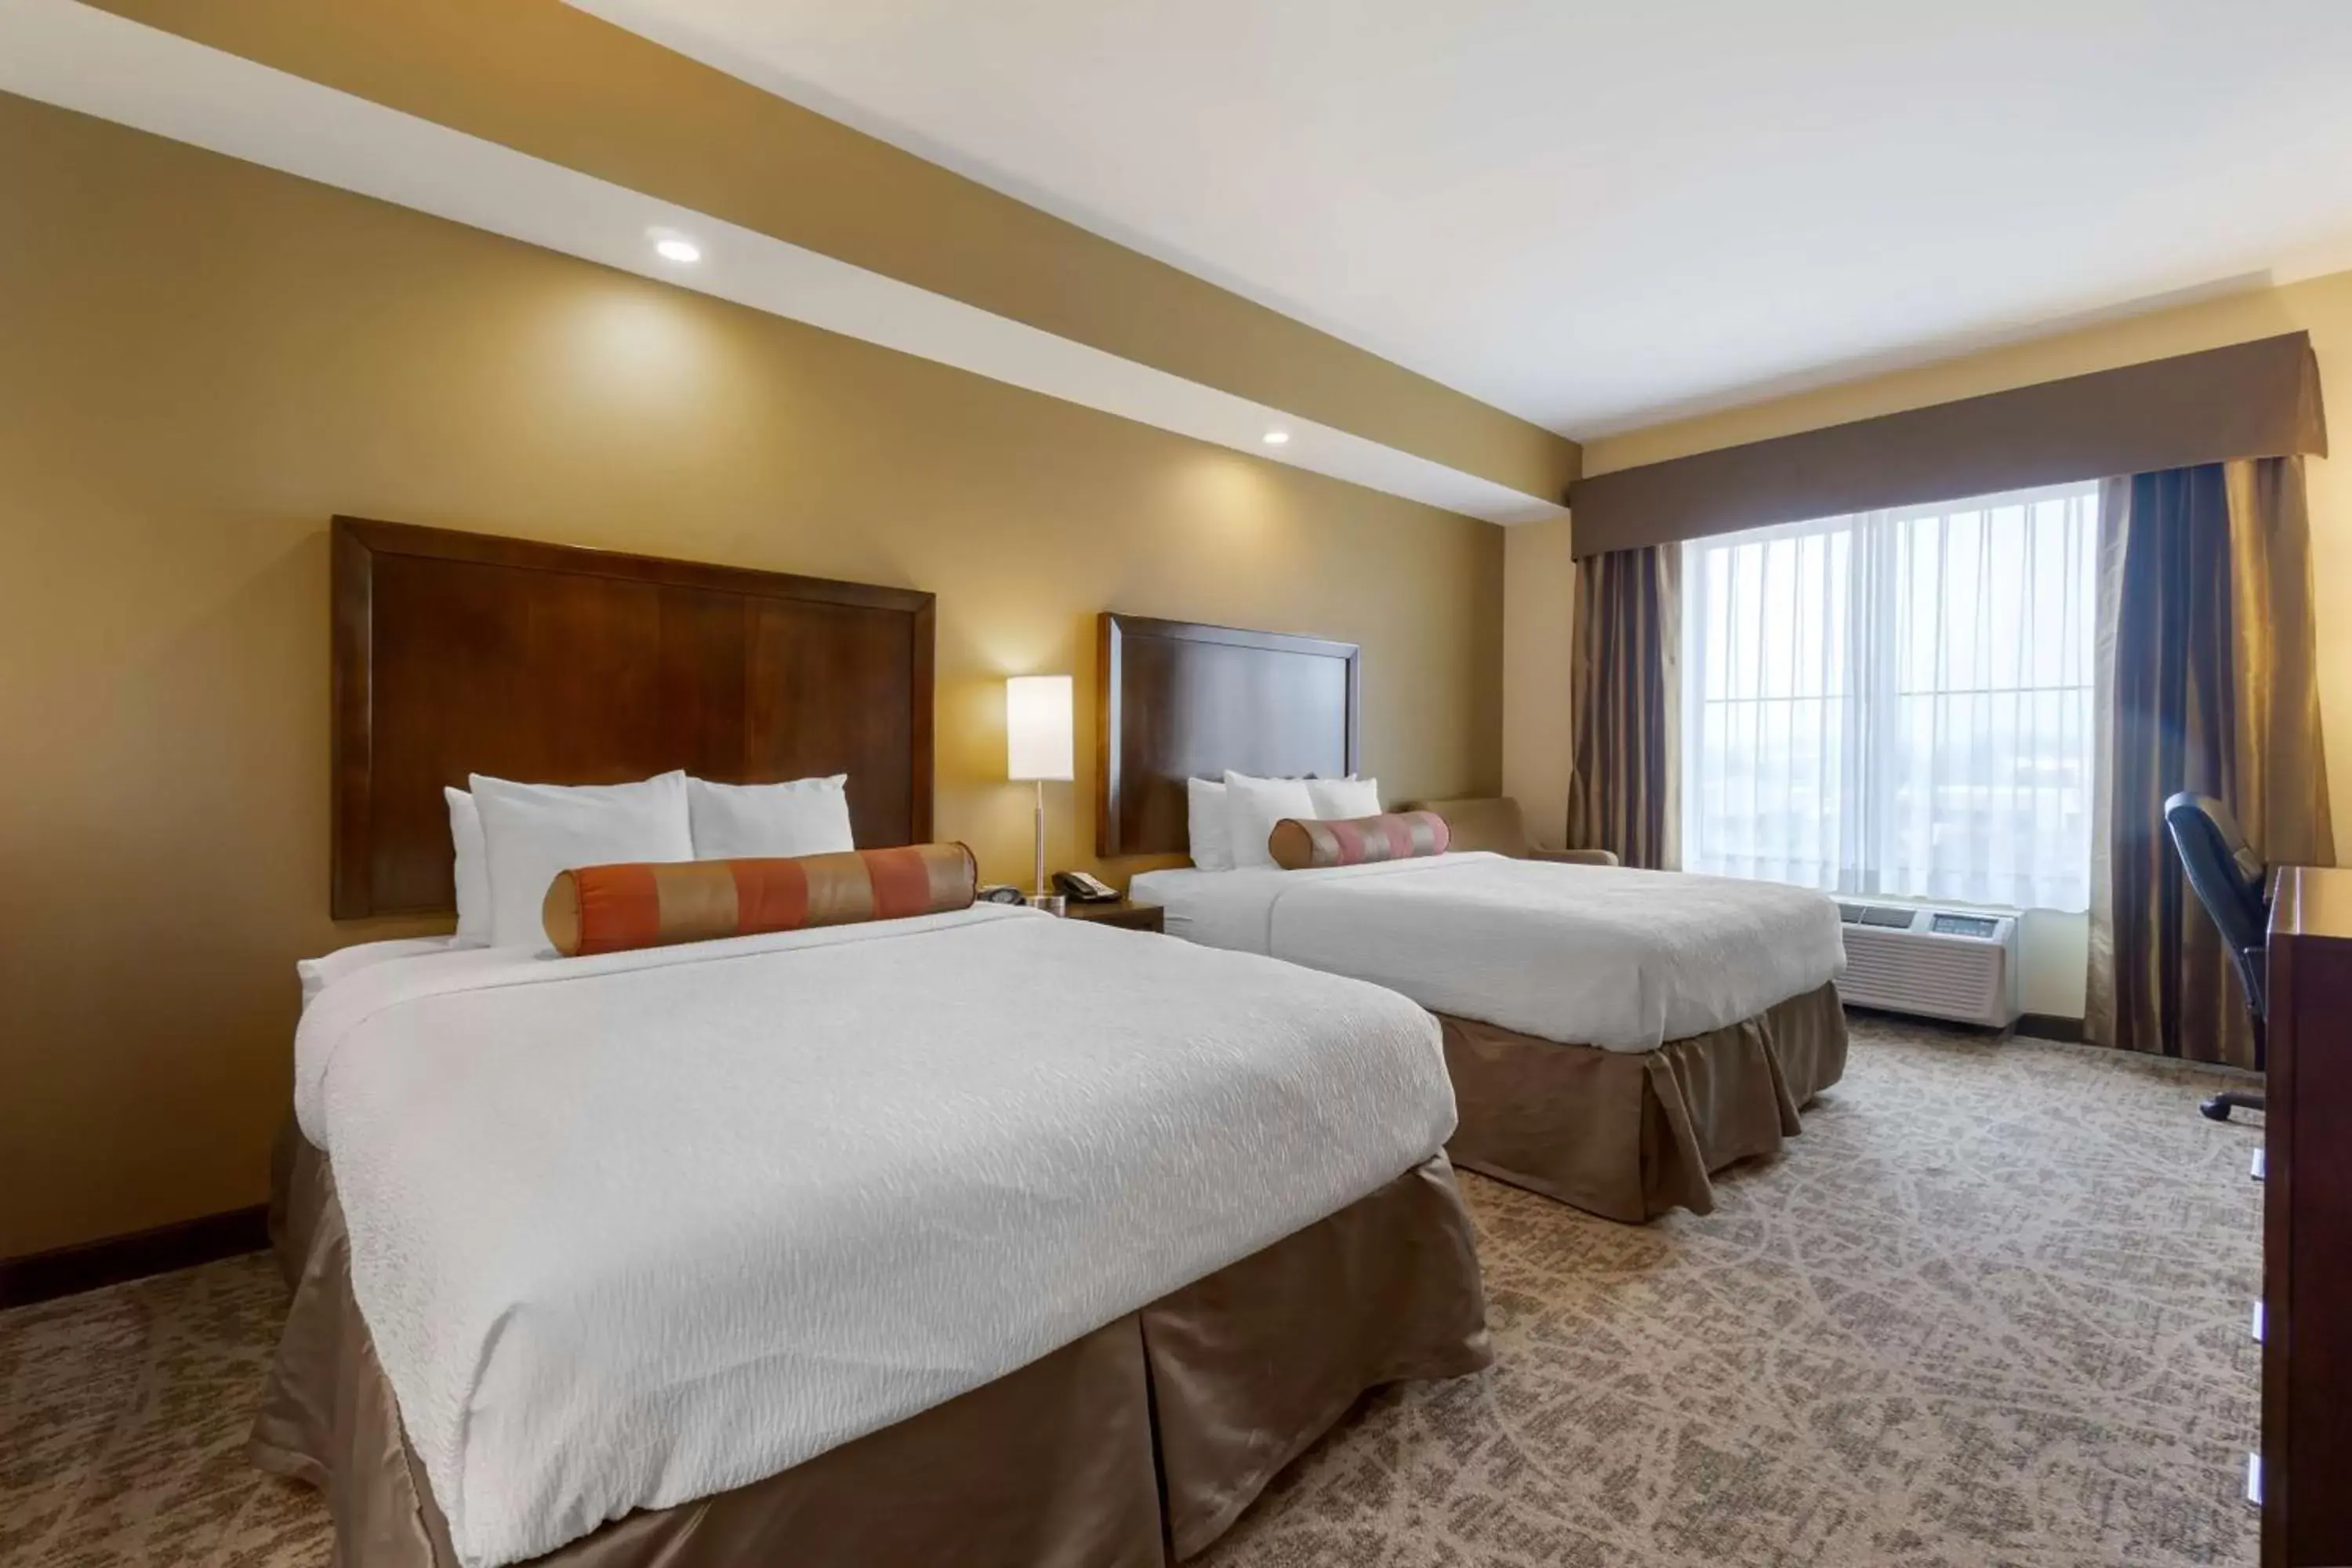 Bedroom, Bed in Best Western Plus Lacey Inn & Suites